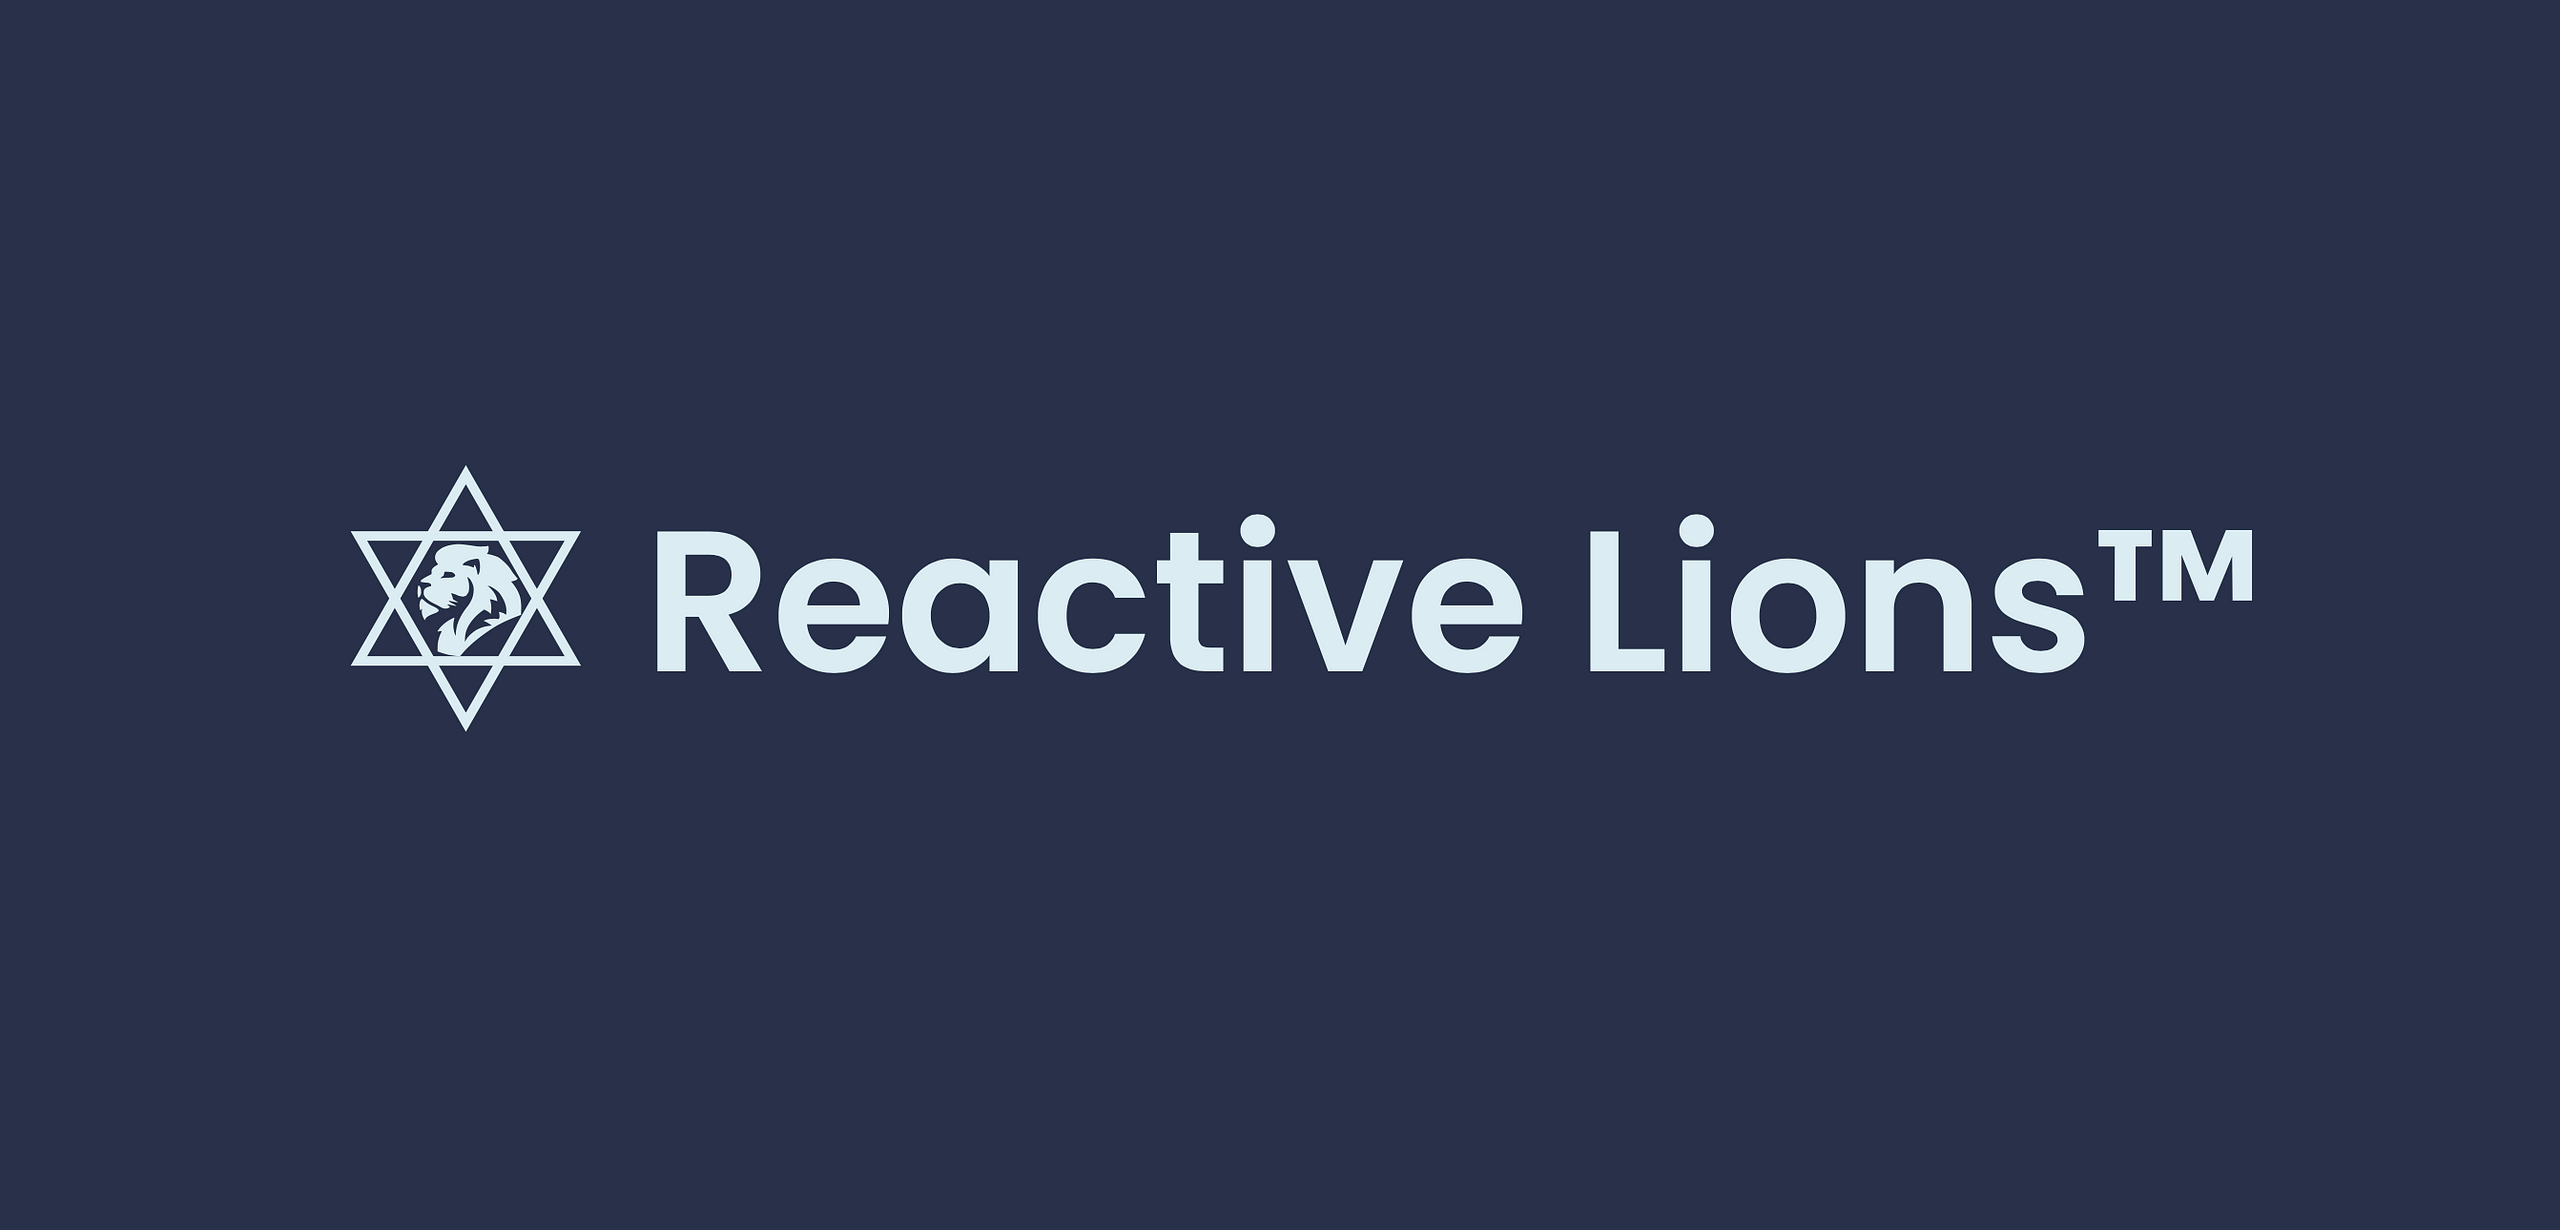 Reactive Lions Trademark